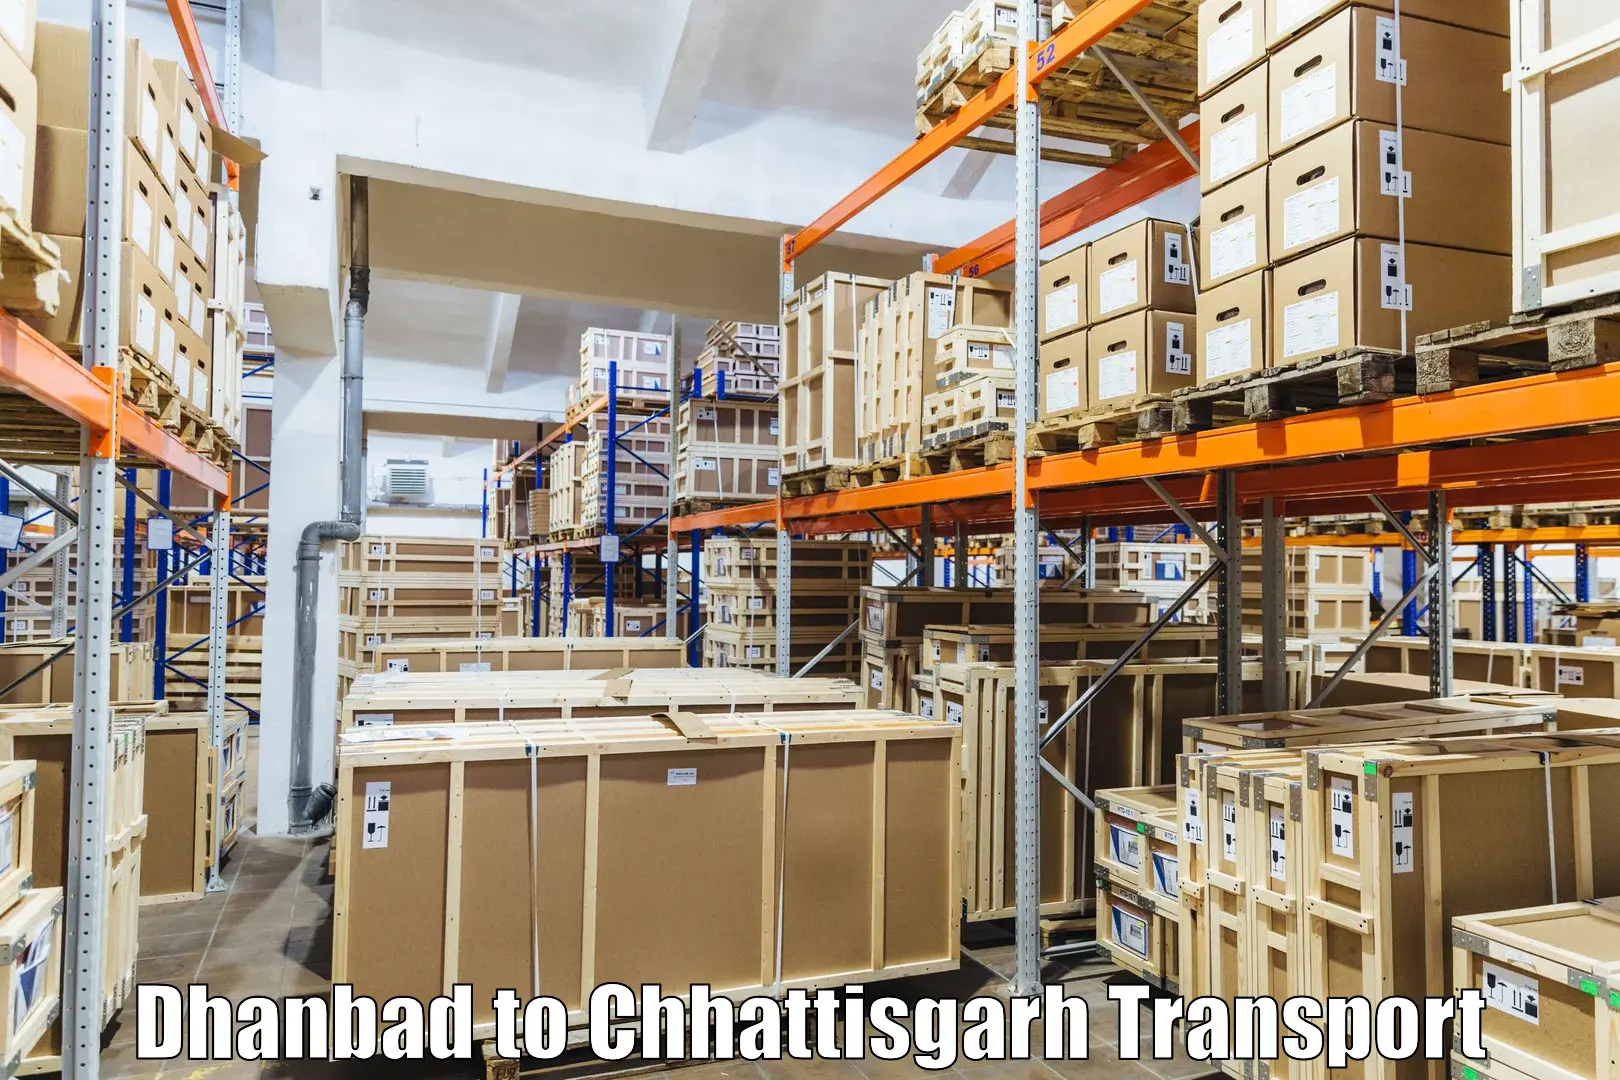 Interstate transport services Dhanbad to Raigarh Chhattisgarh